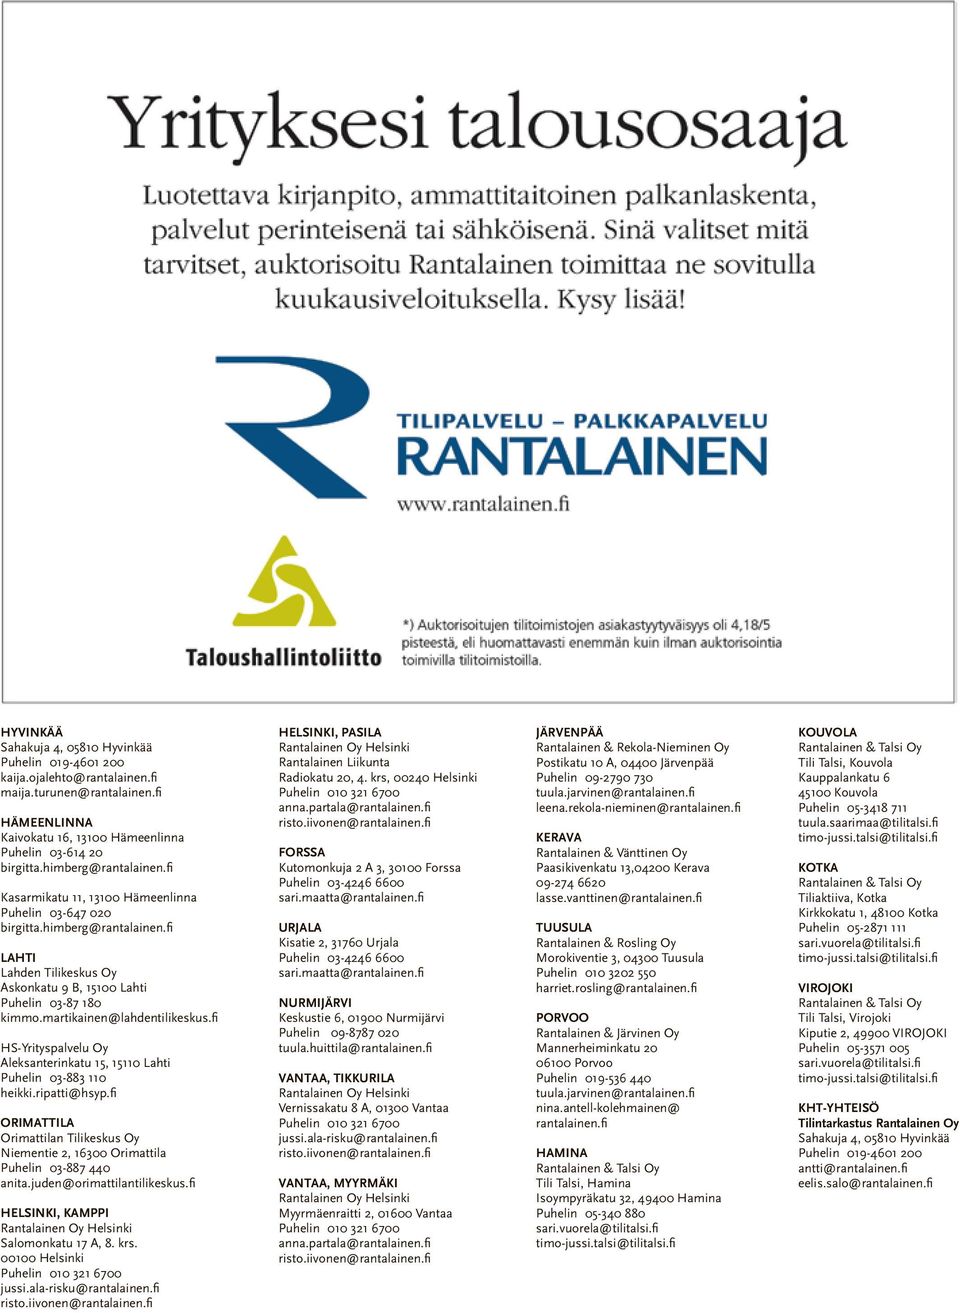 martikainen@lahdentilikeskus.fi HS-Yrityspalvelu Oy Aleksanterinkatu 15, 15110 Lahti Puhelin 03-883 110 heikki.ripatti@hsyp.